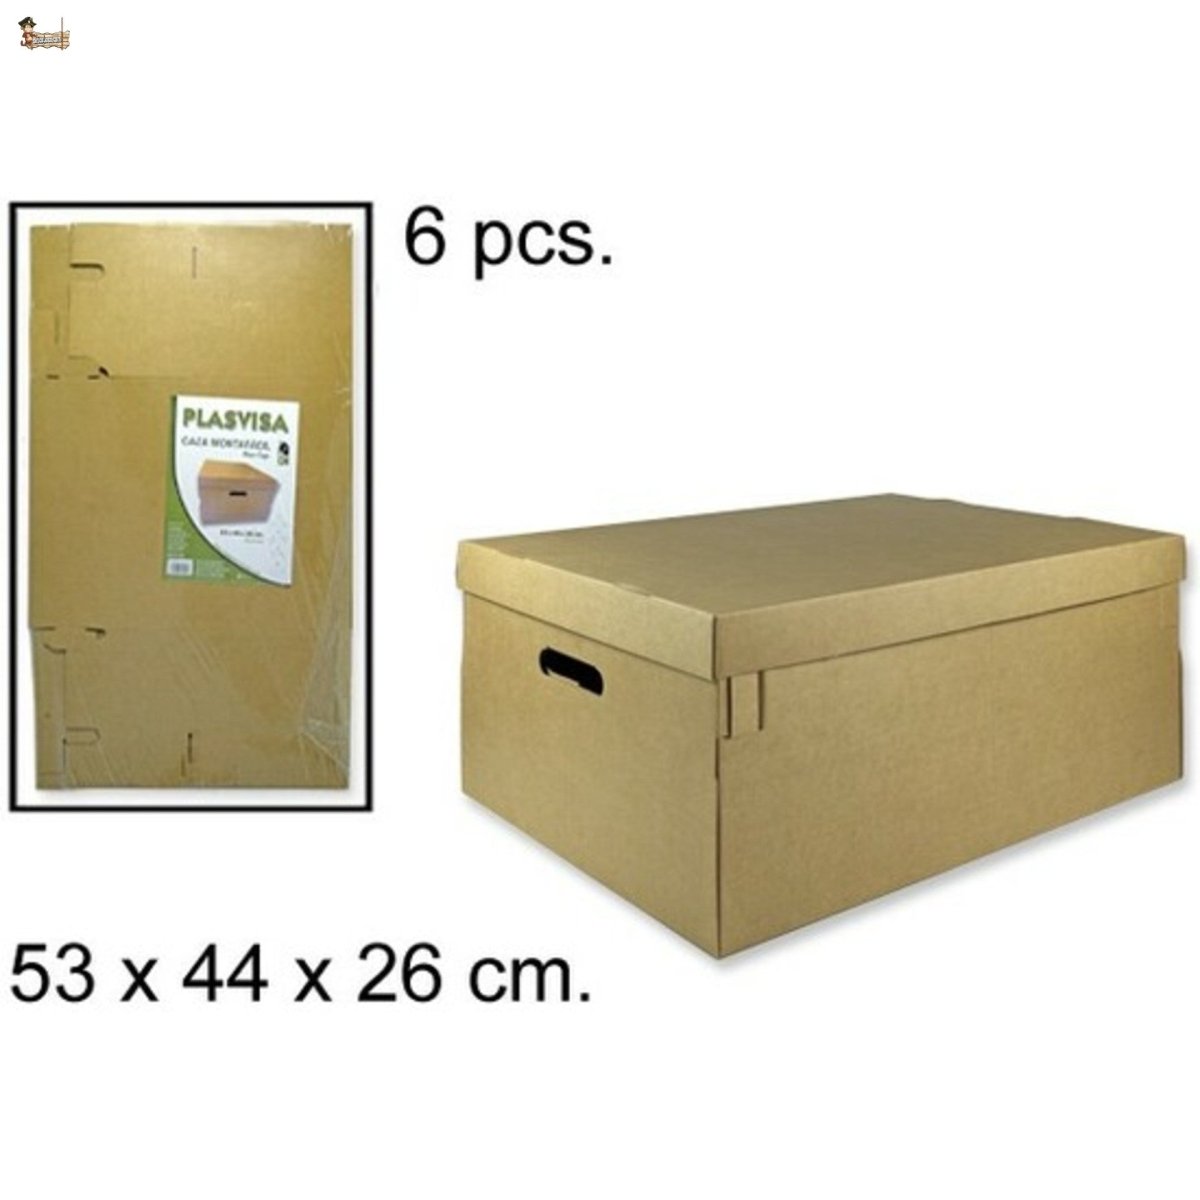 Cajas de cartón automontables con asas, ideal para reparto. Tapa